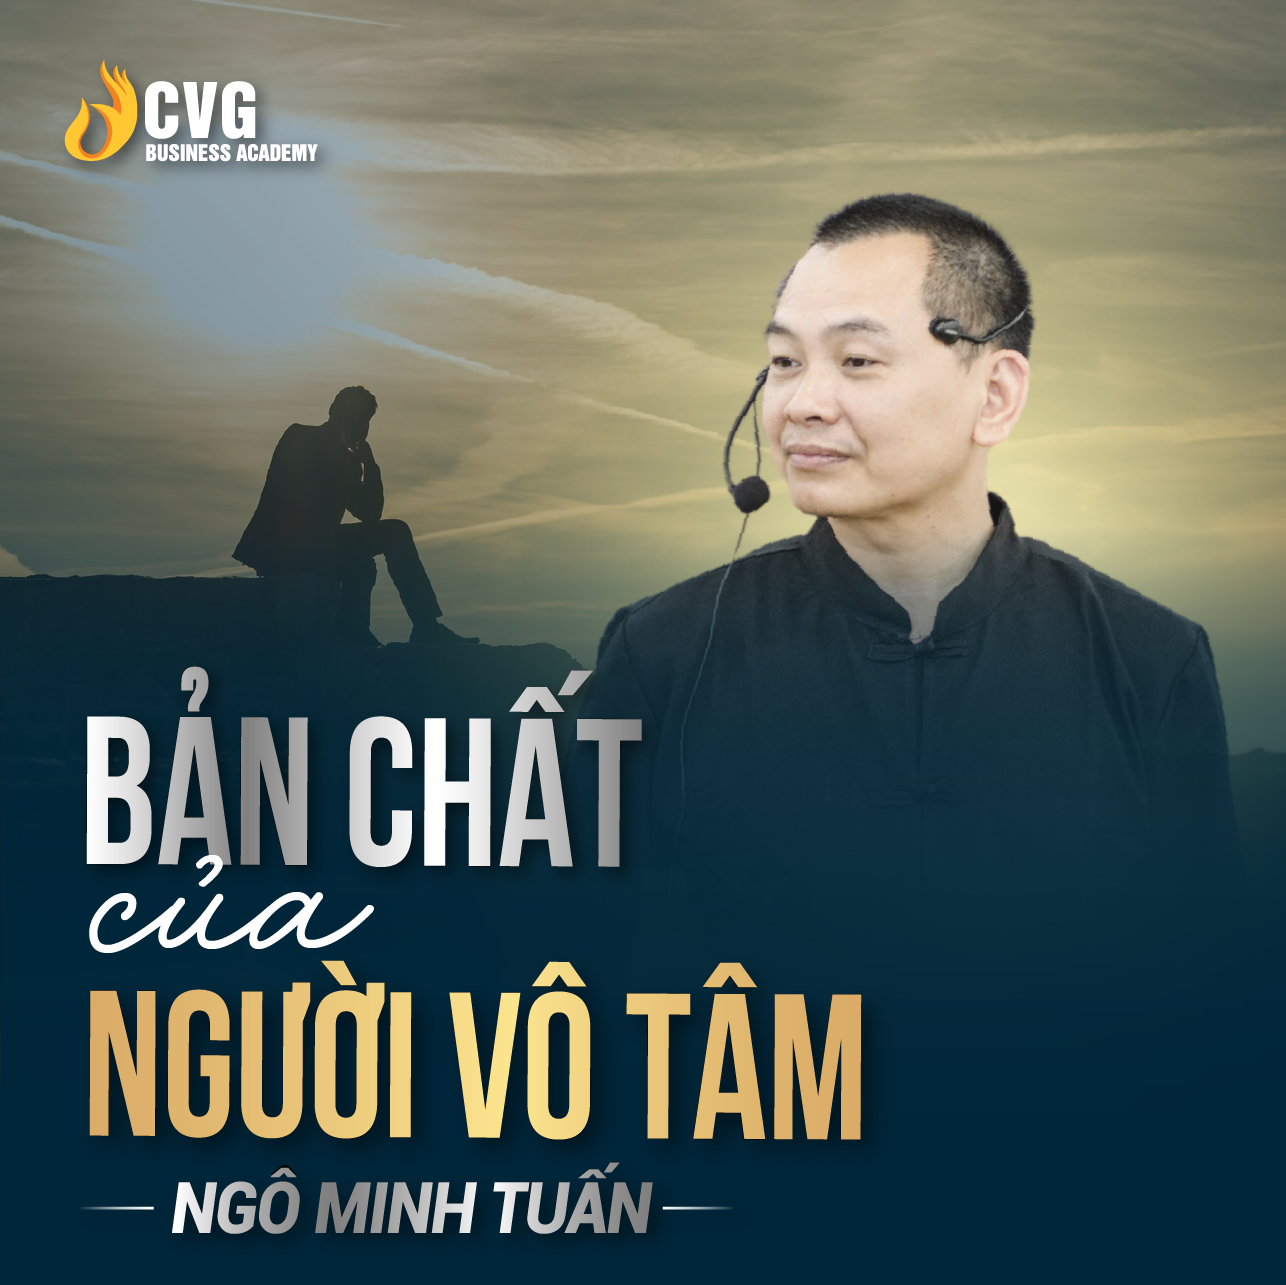 BẢN CHẤT CỦA NGƯỜI VÔ TÂM | Ngô Minh Tuấn | Học Viện CEO Việt Nam Global